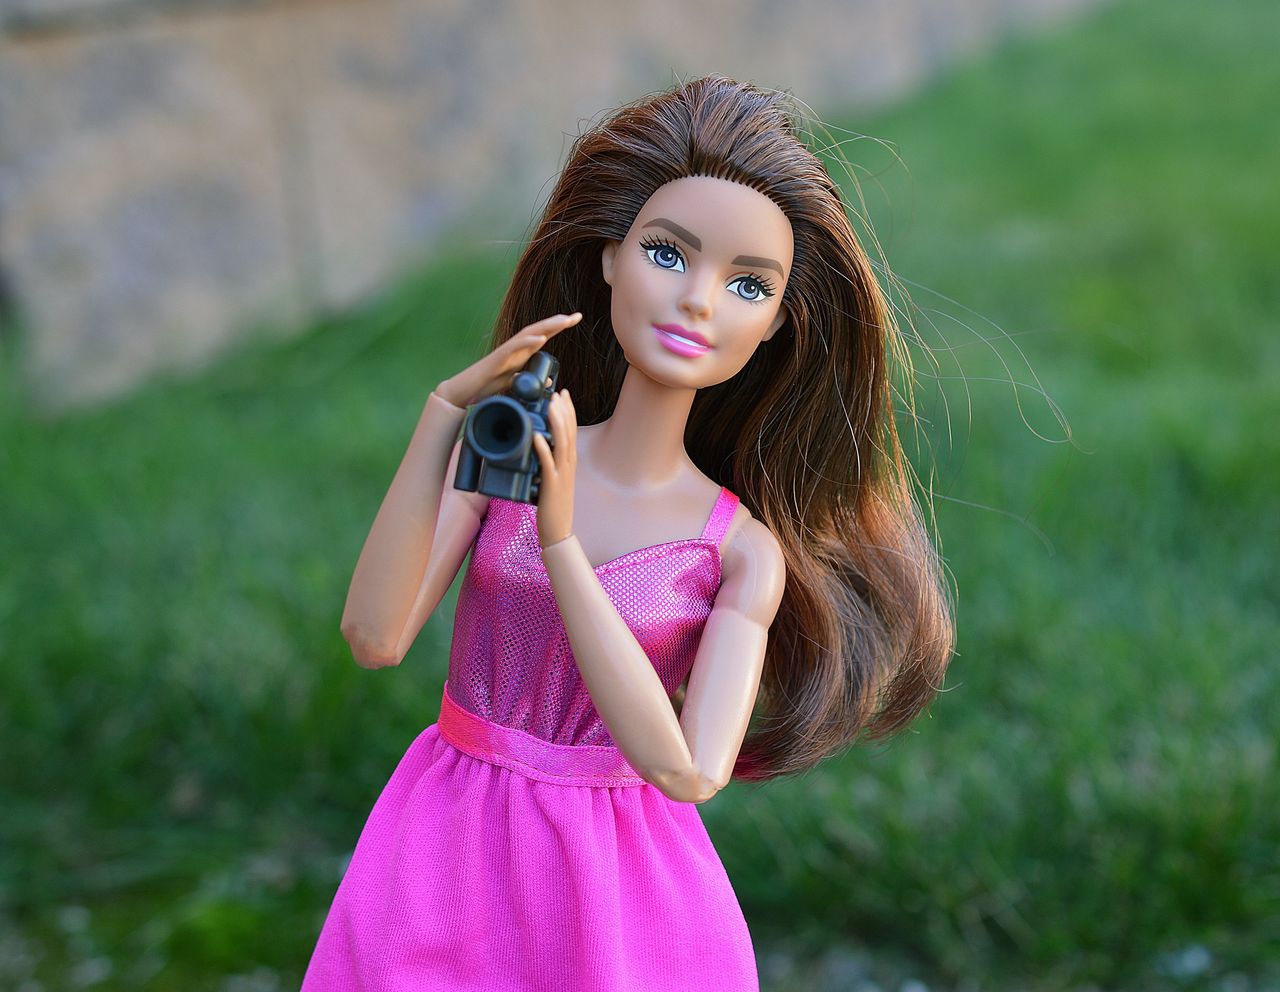 Apel Ministerstwa Cyfryzacji. "Uważaj na selfie z Barbie"